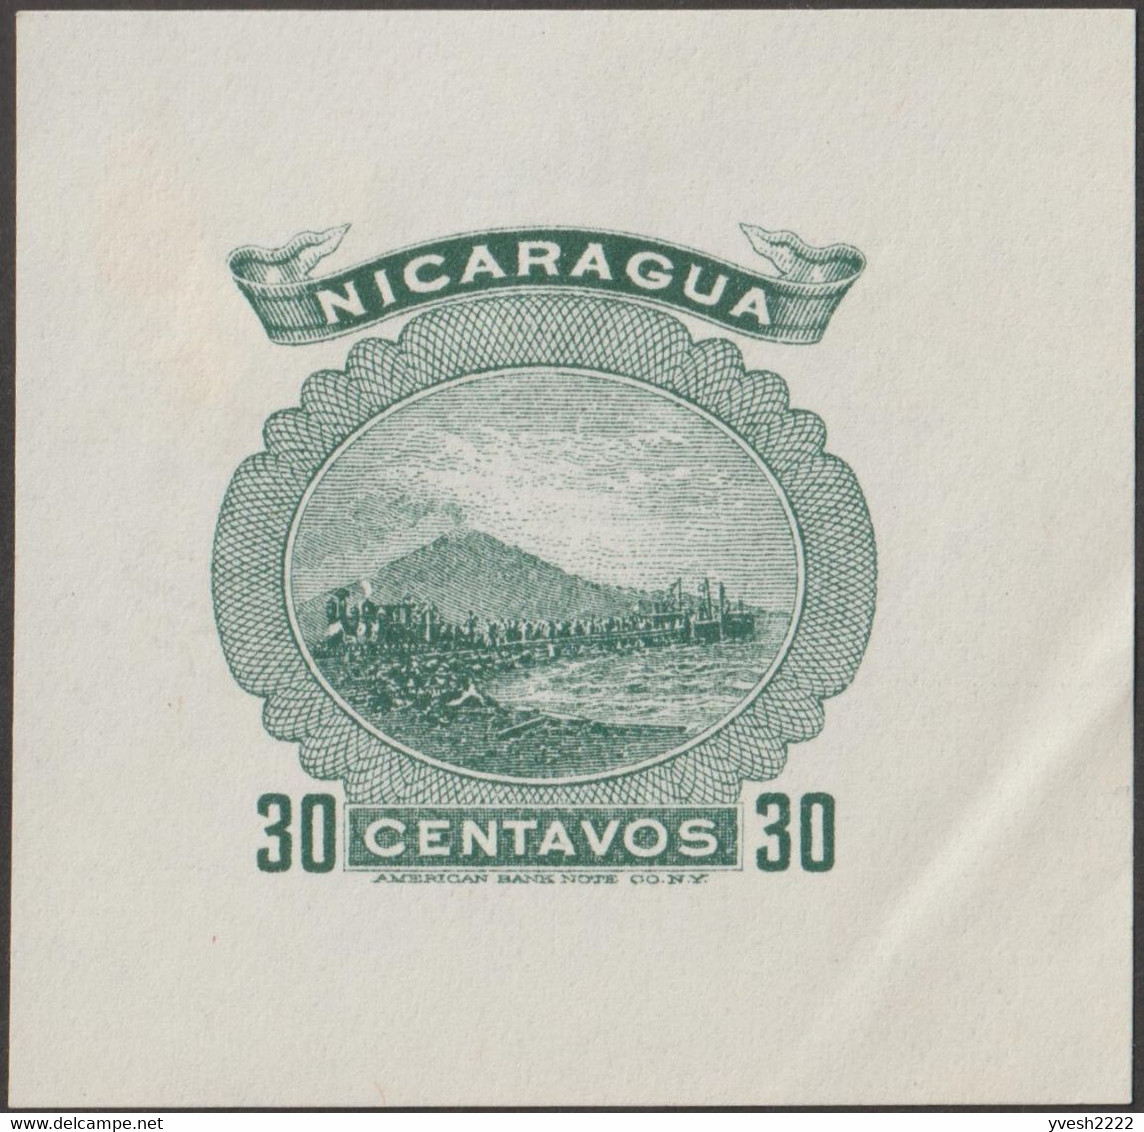 Nicaragua 1900. 7 essais d'affranchissements d'entiers postaux. Volcan Momotombo, de type stratovolcan, 1297 mètres